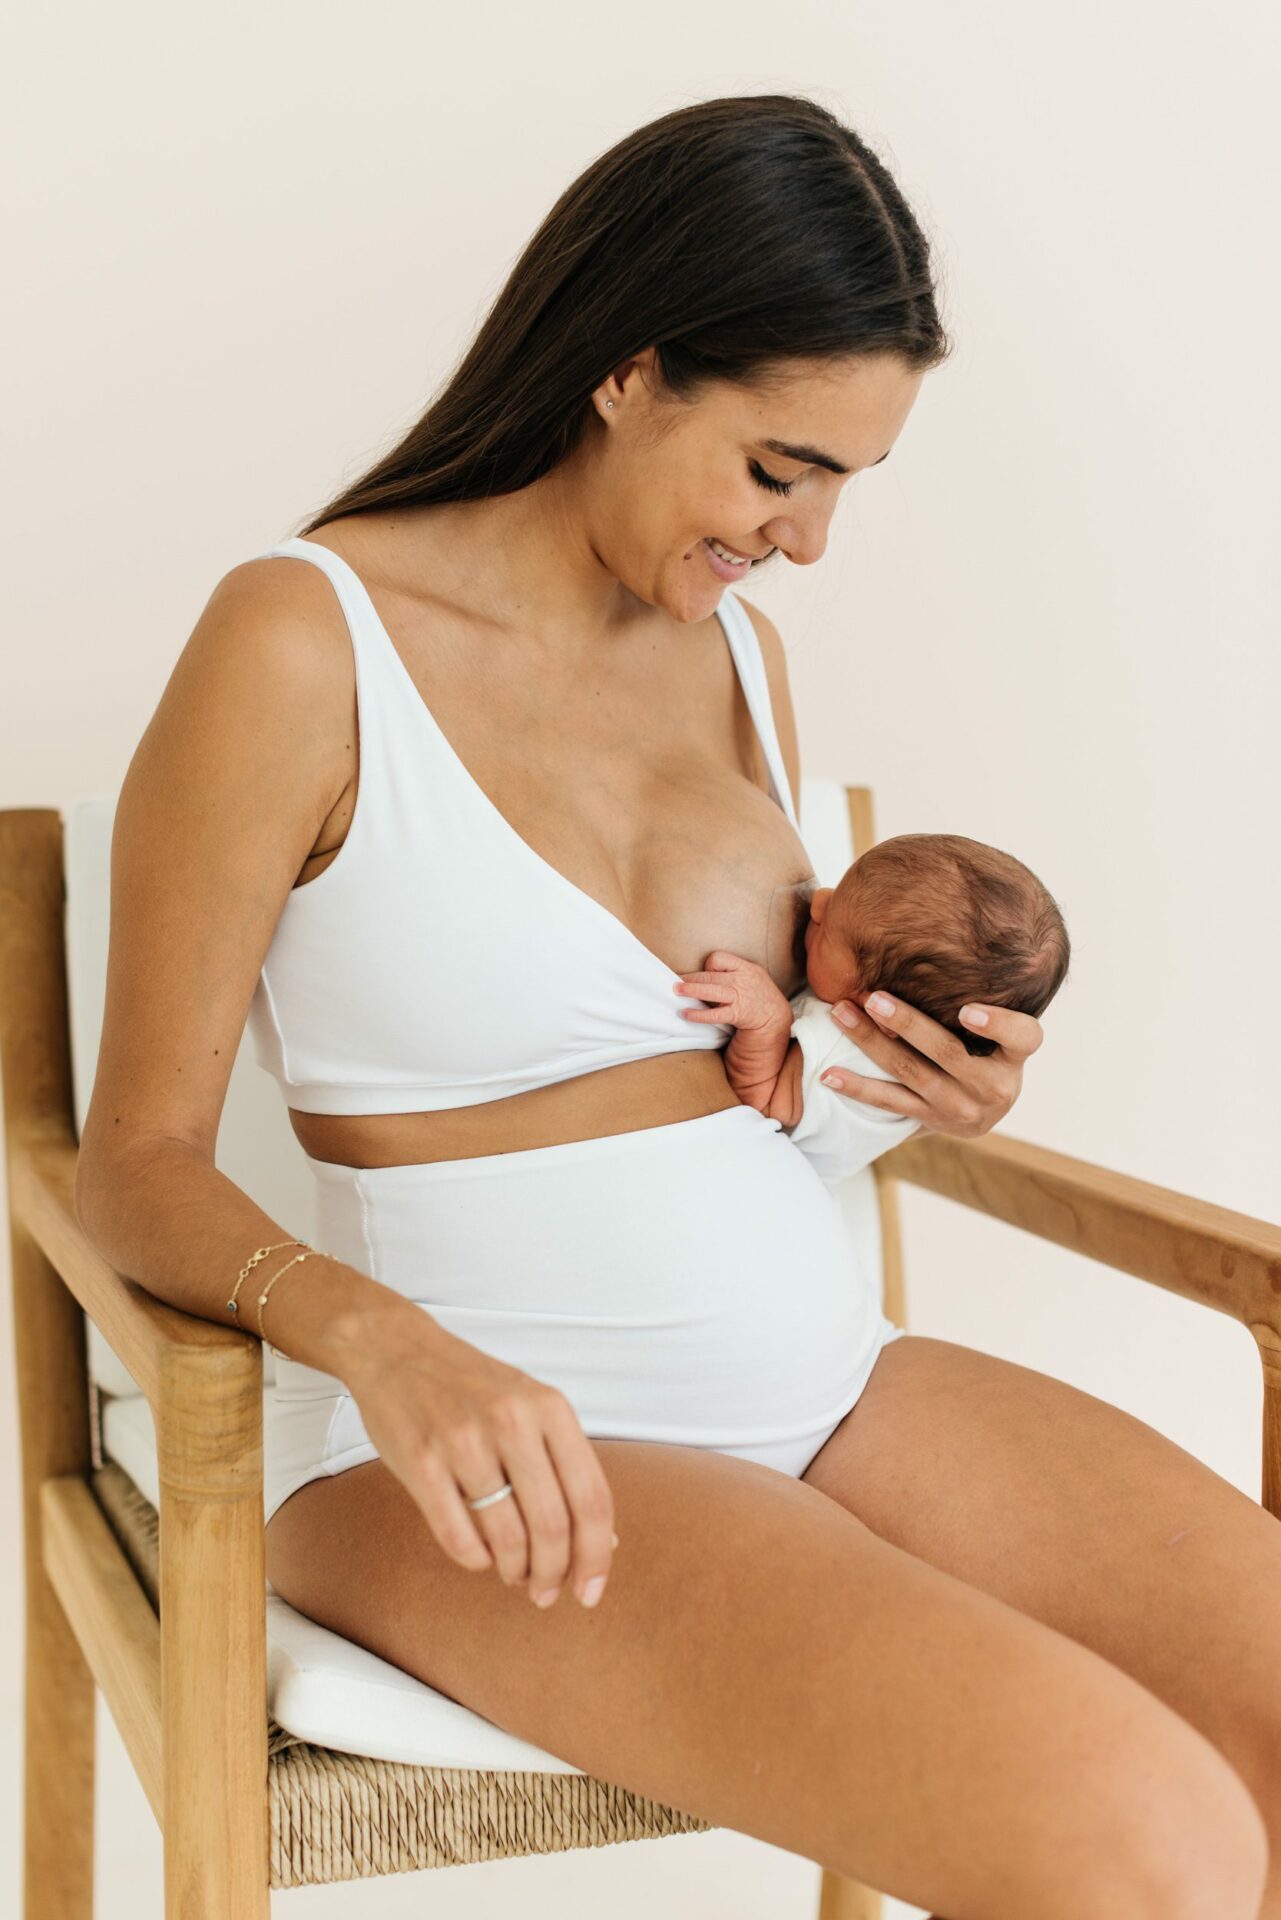 Baesic Bra - Breastfeeding & Nursing Bra